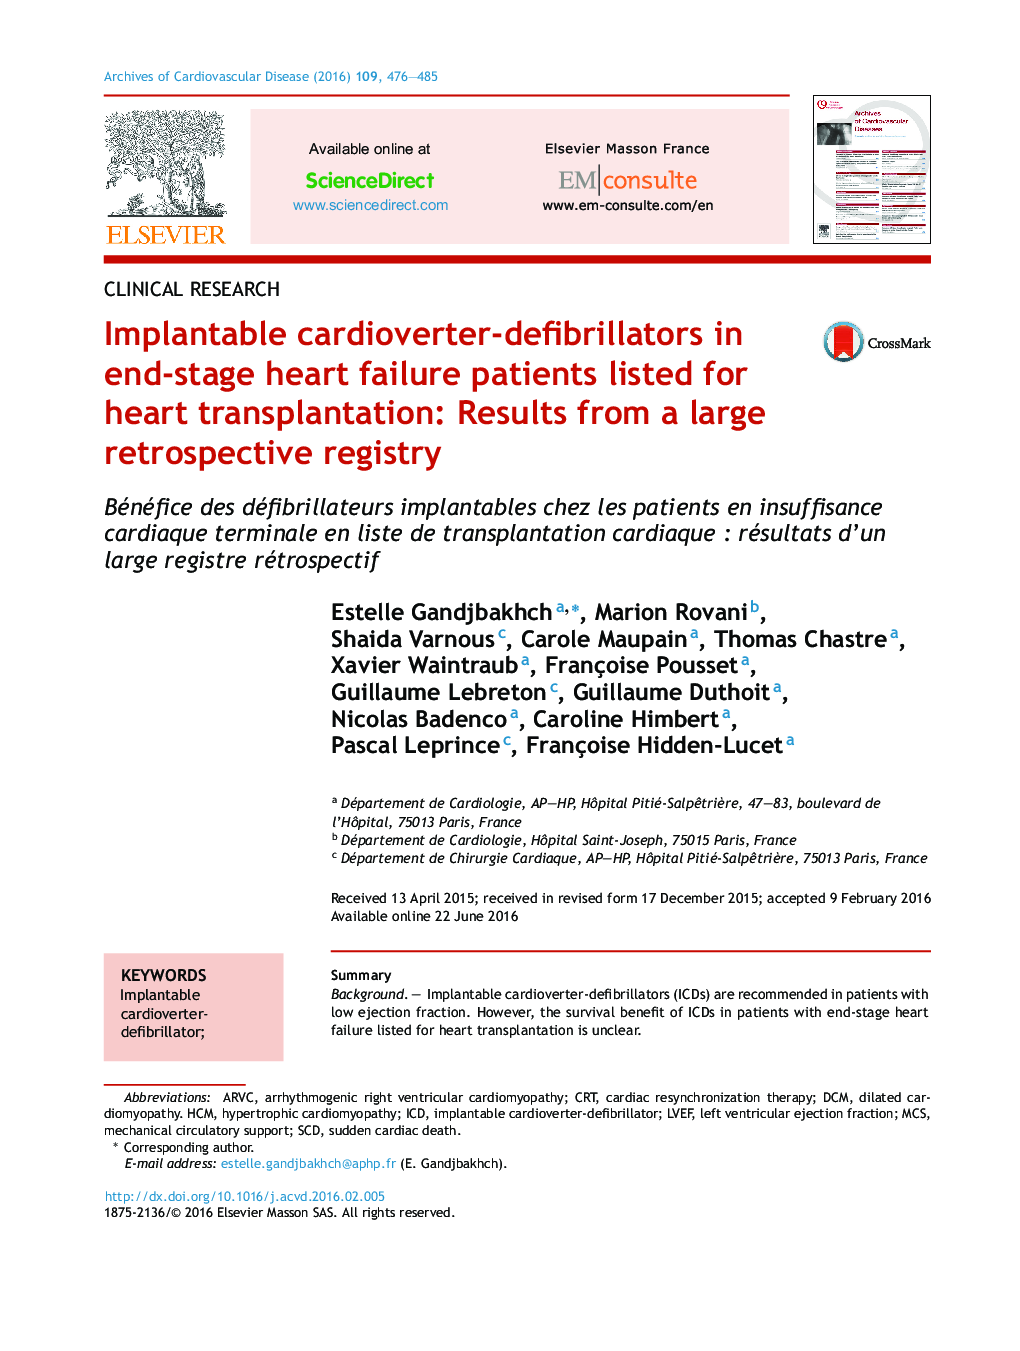 دیابریلاتلرهای قلب و عروق قابل اجرا در بیماران مبتلا به نارسایی قلب که برای پیوند قلب لیست شده اند: نتایج یک رکورد تاریخی بزرگ 